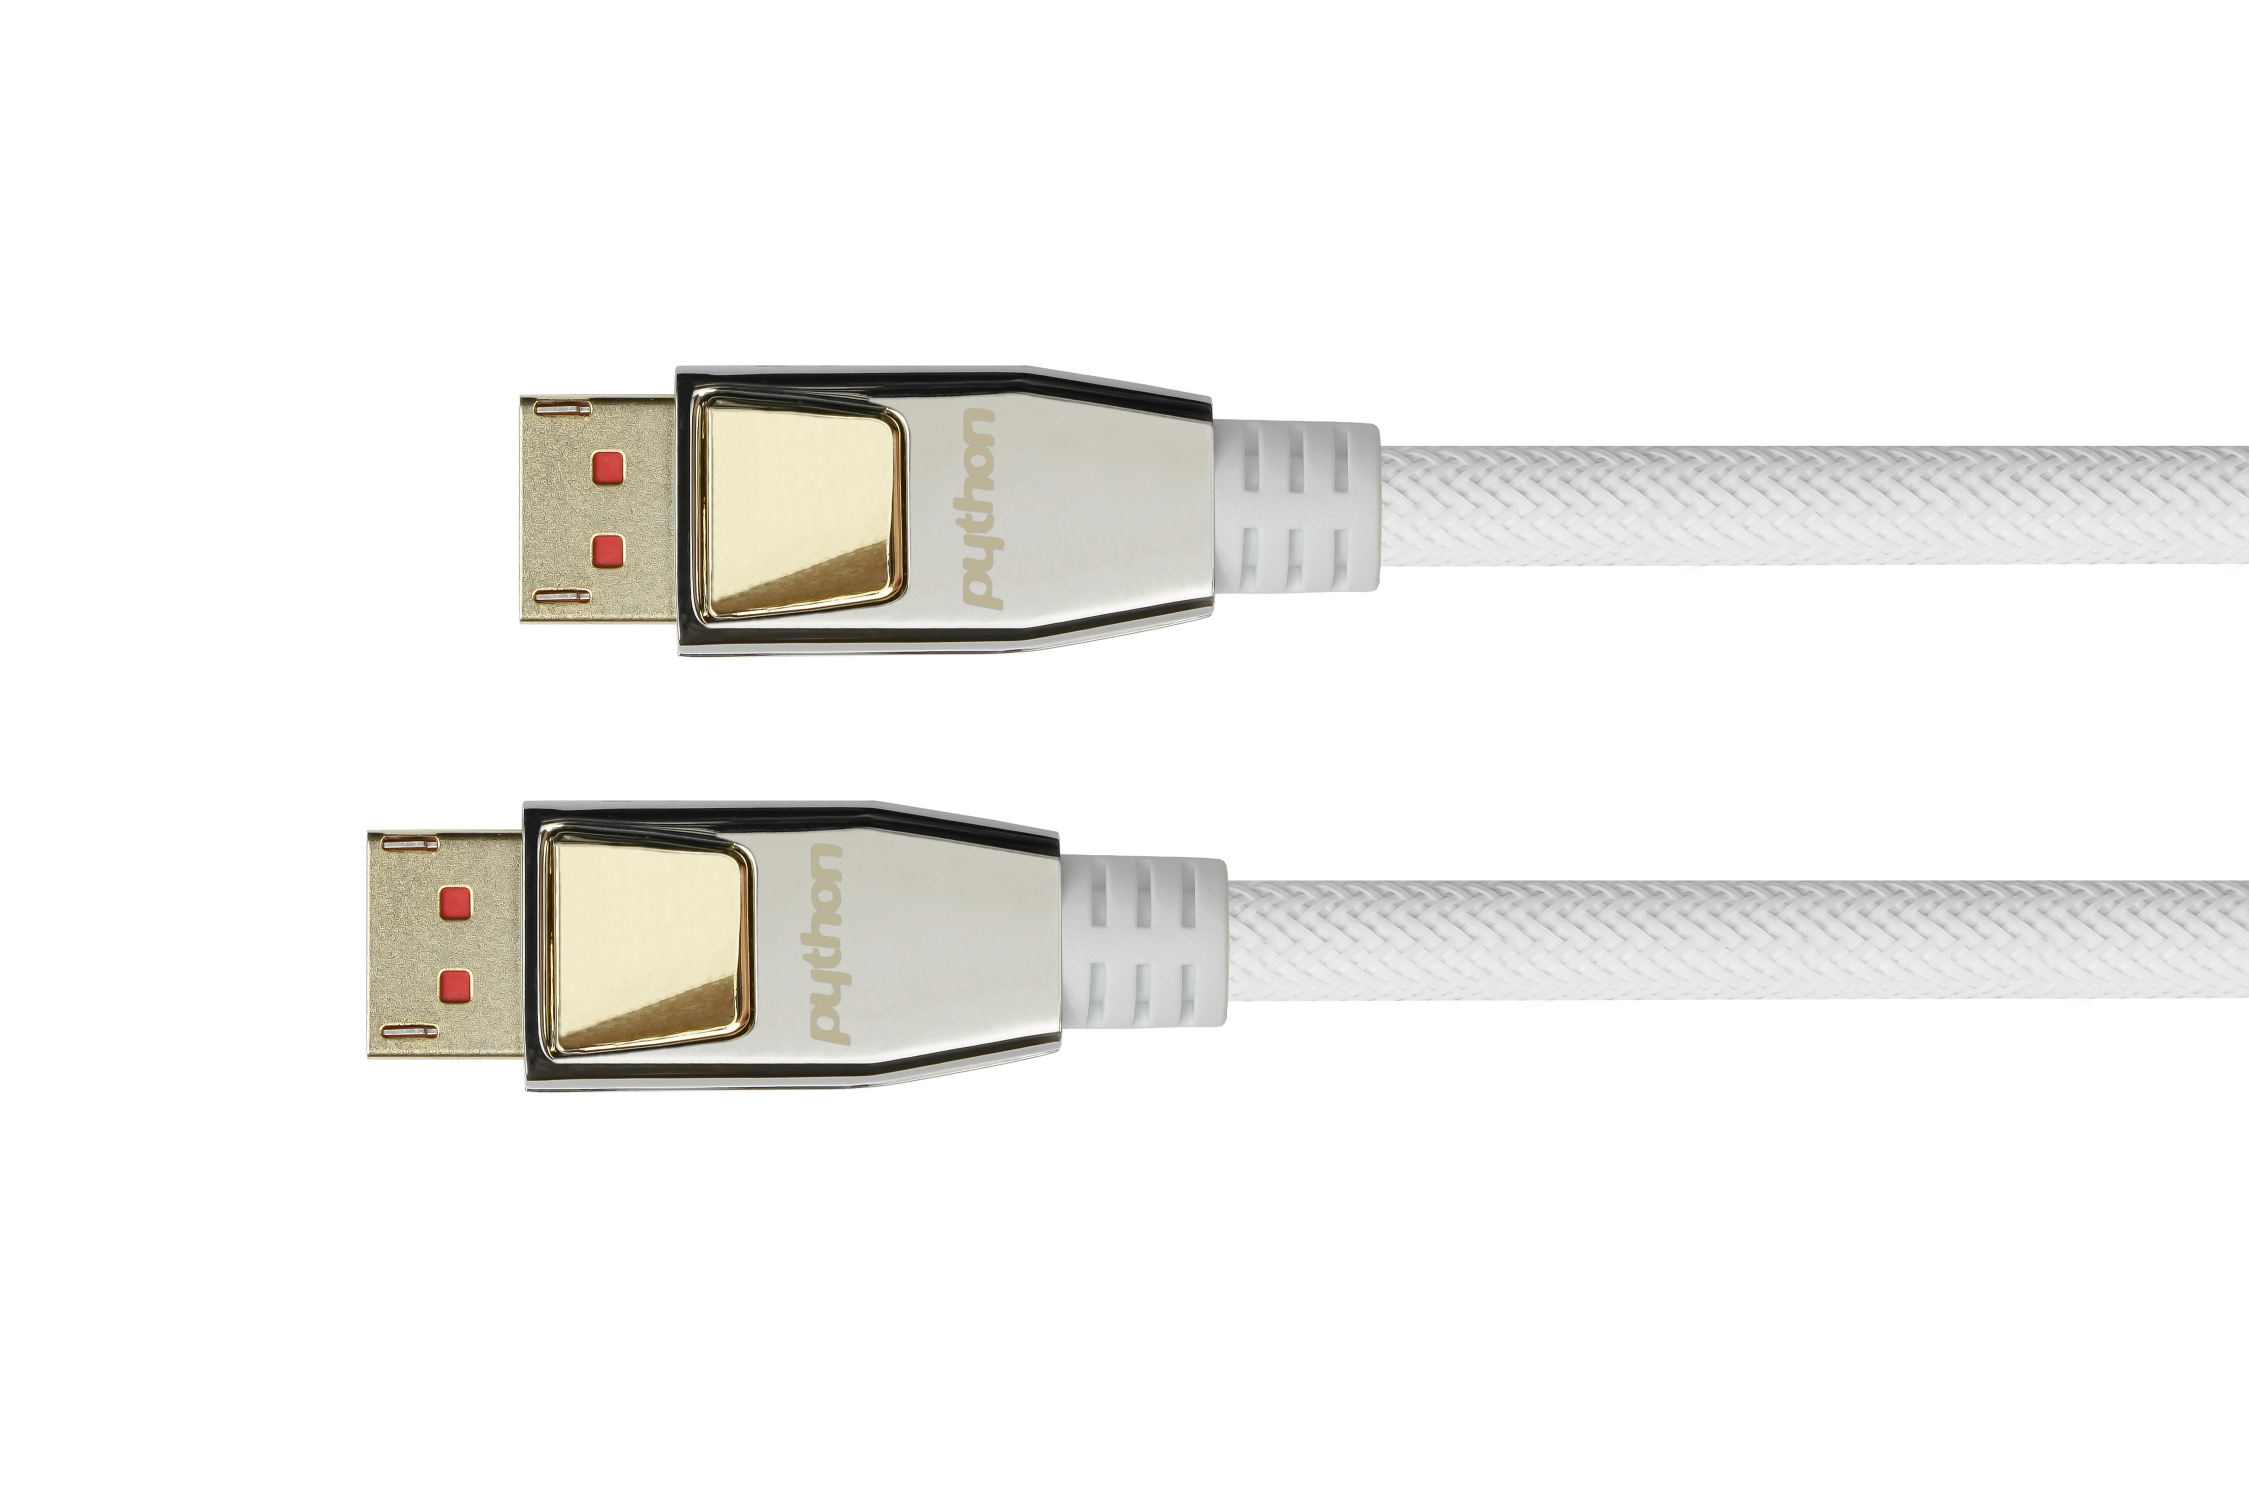 Anschlusskabel DisplayPort 1.4, 8K/UHD-2 @60Hz, AKTIV (Redmere Chips.), Nylongeflecht weiß, 10m